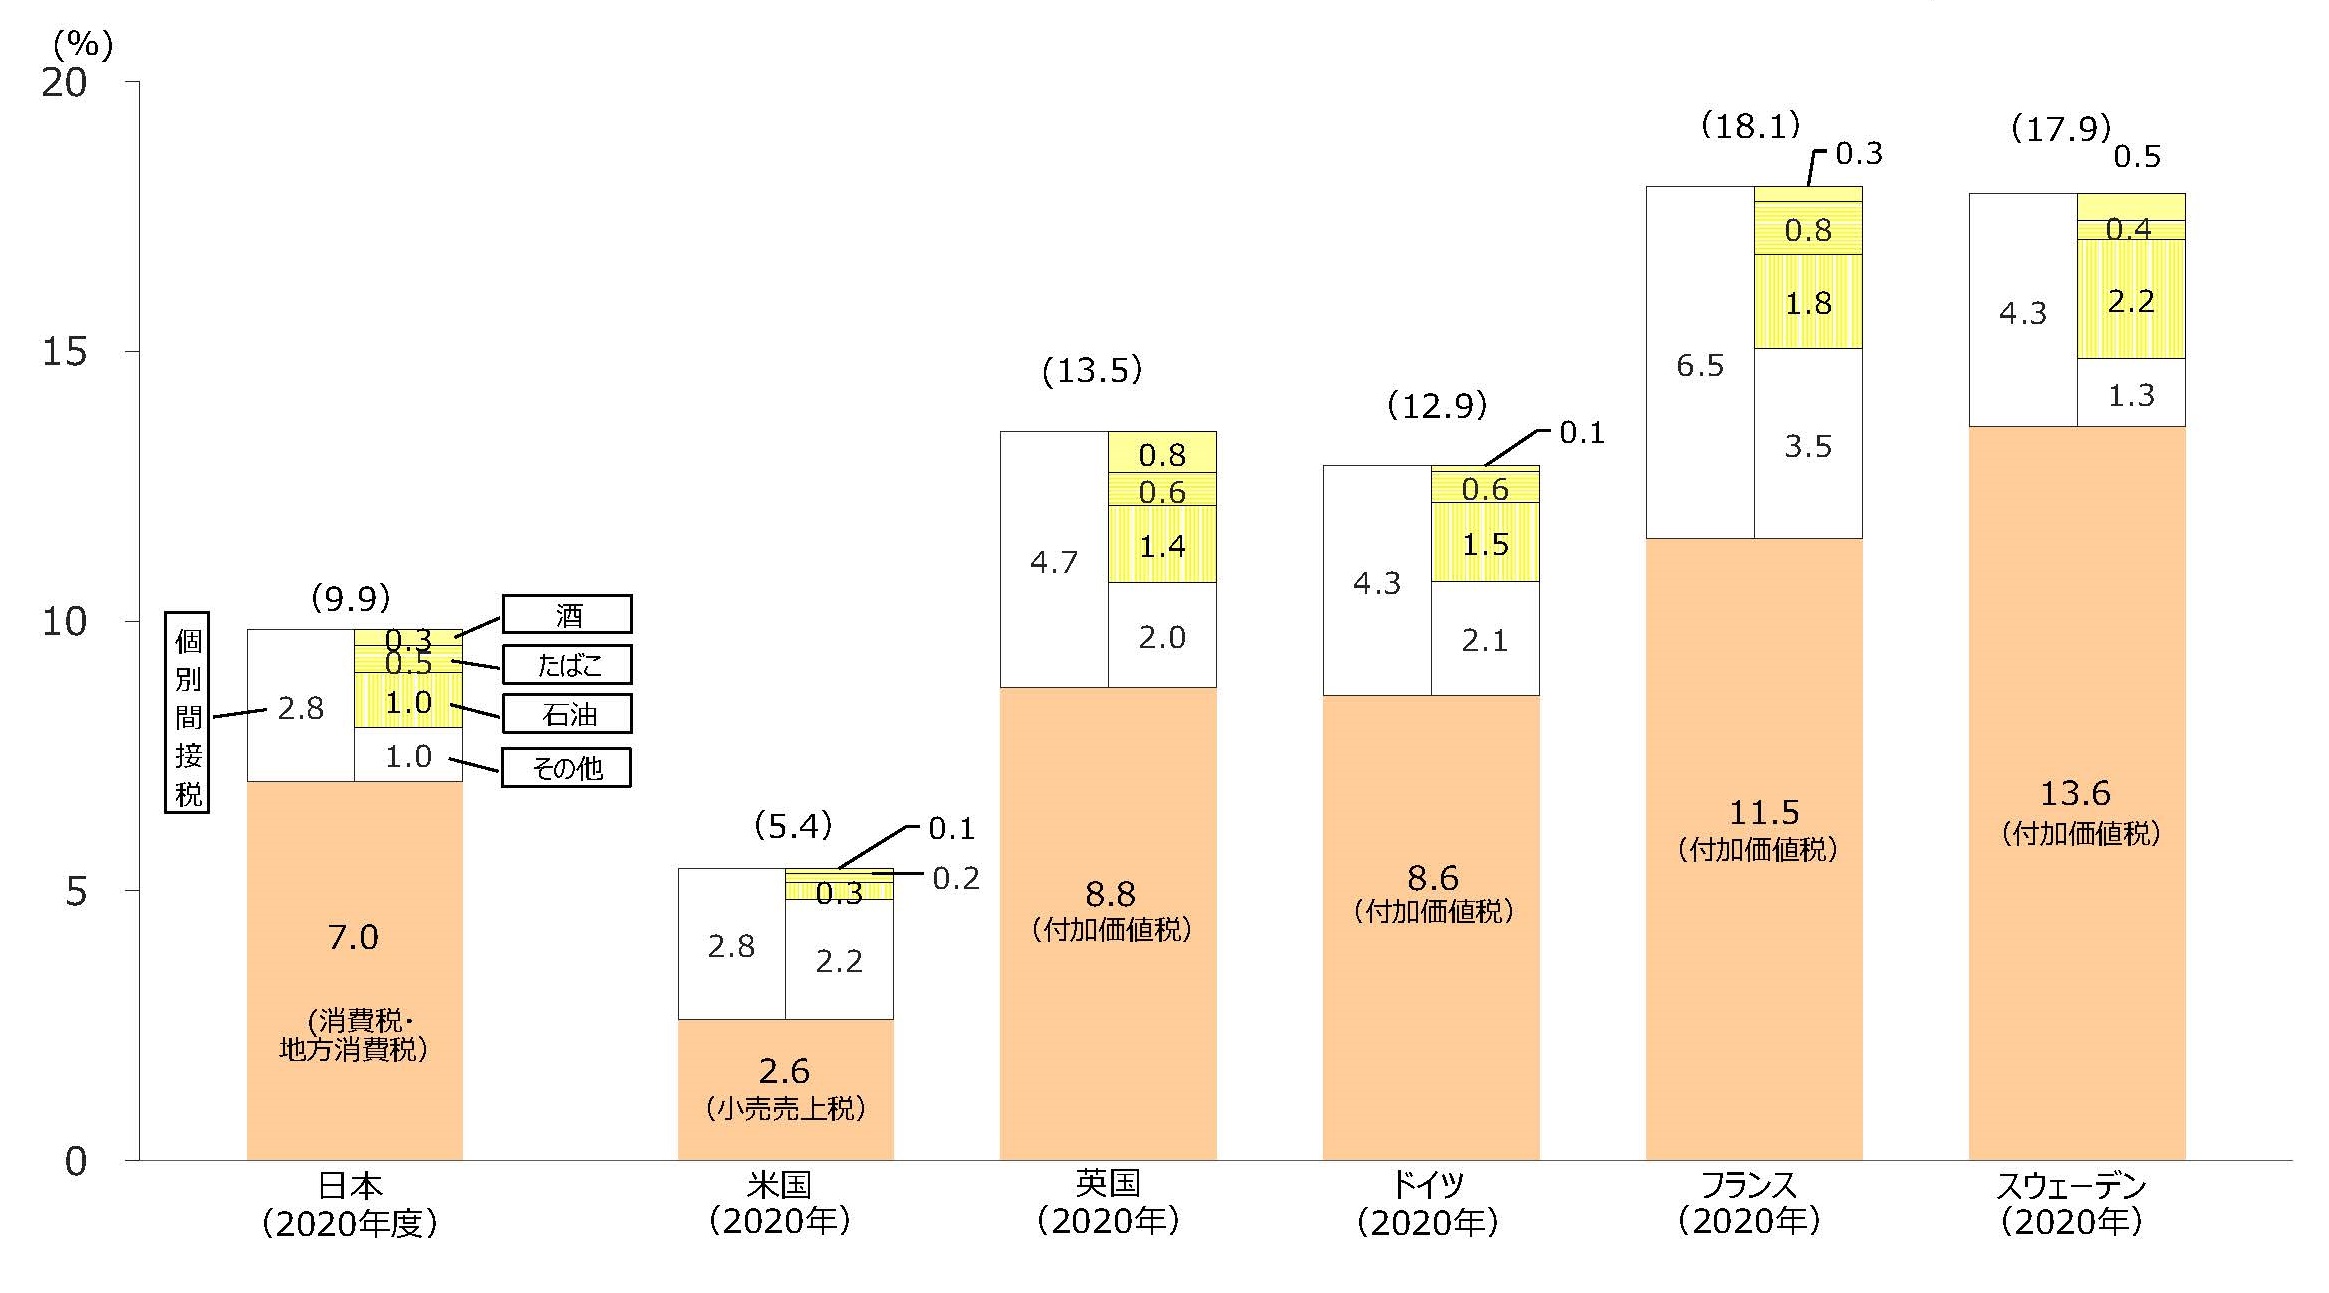 諸外国における国民所得に対する消費課税の割合の比較（国税・地方税）